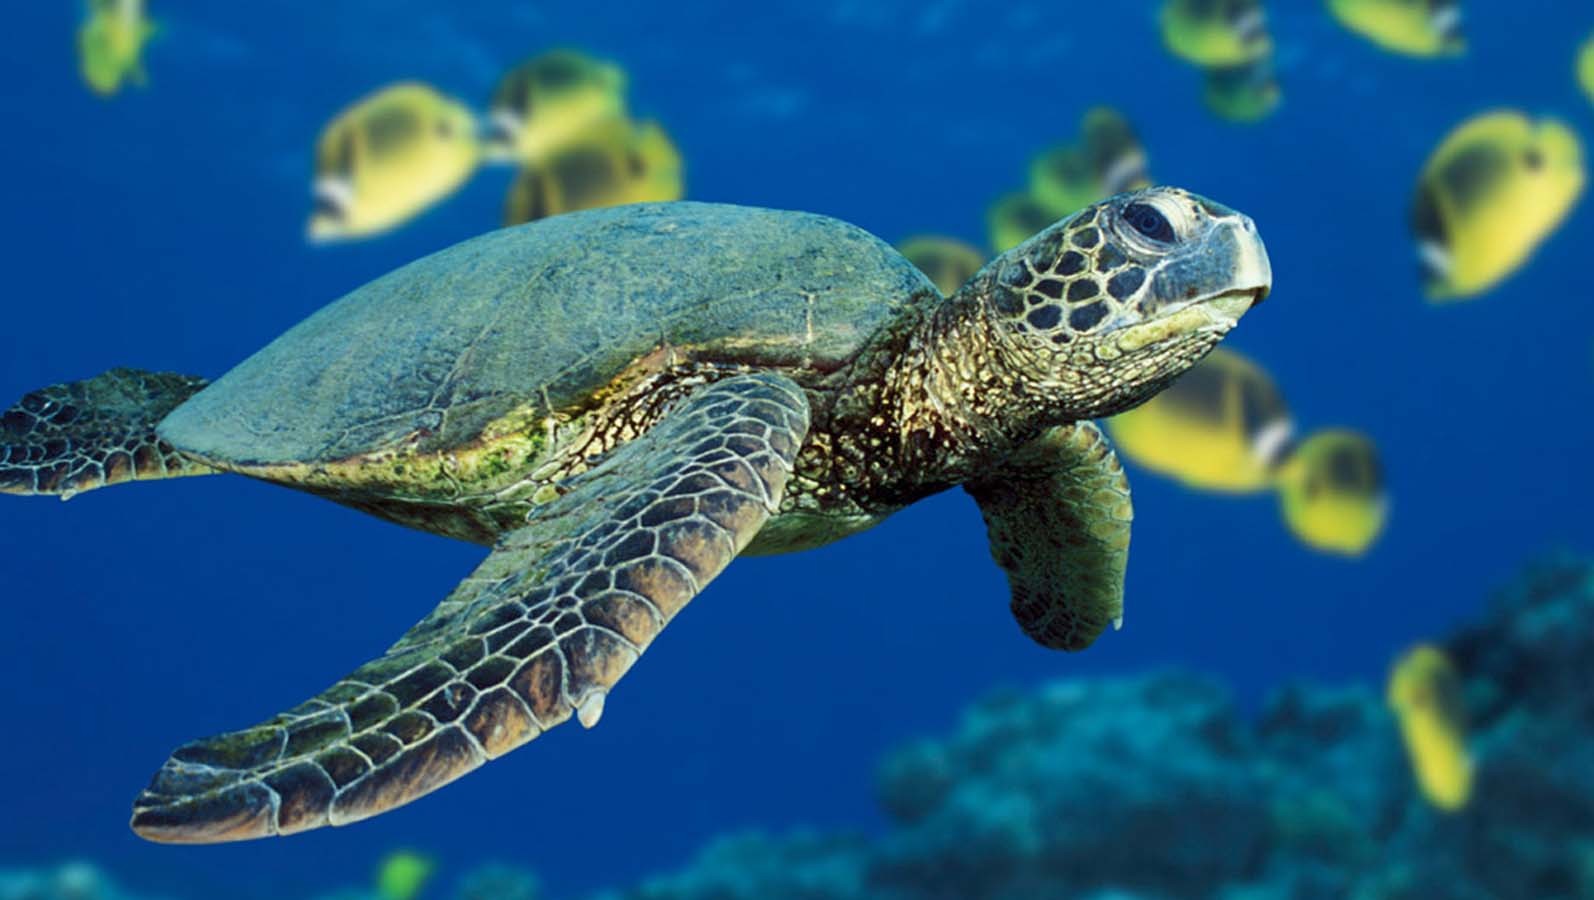 General 1594x900 animals underwater turtle